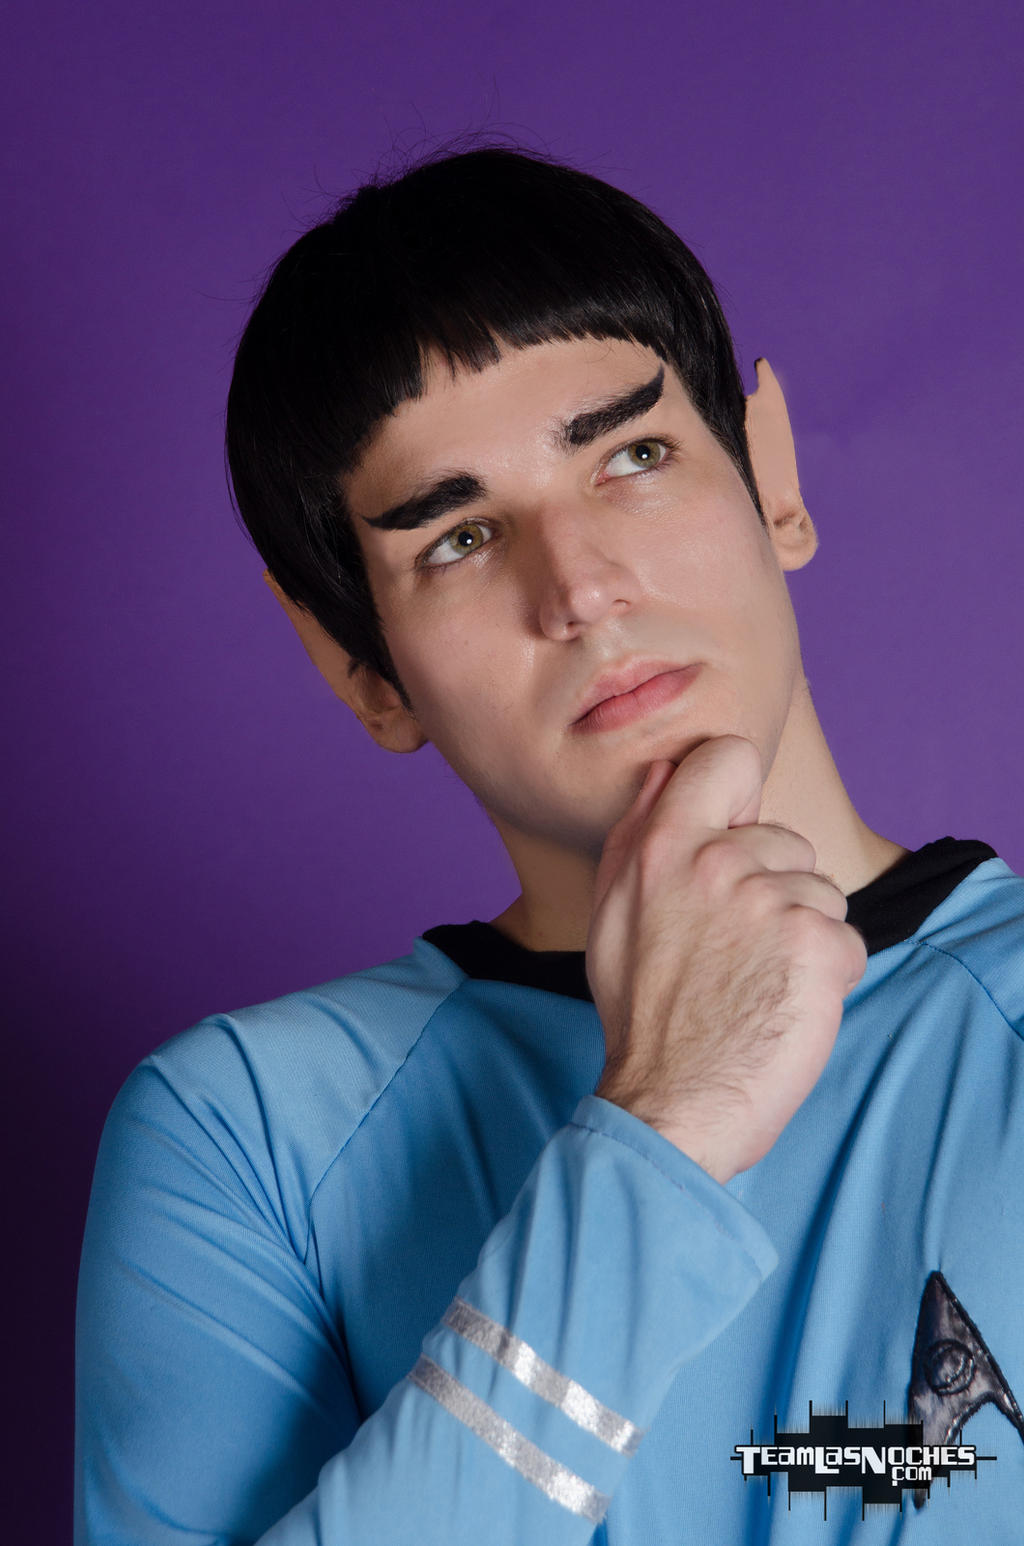 Spock - Star Trek